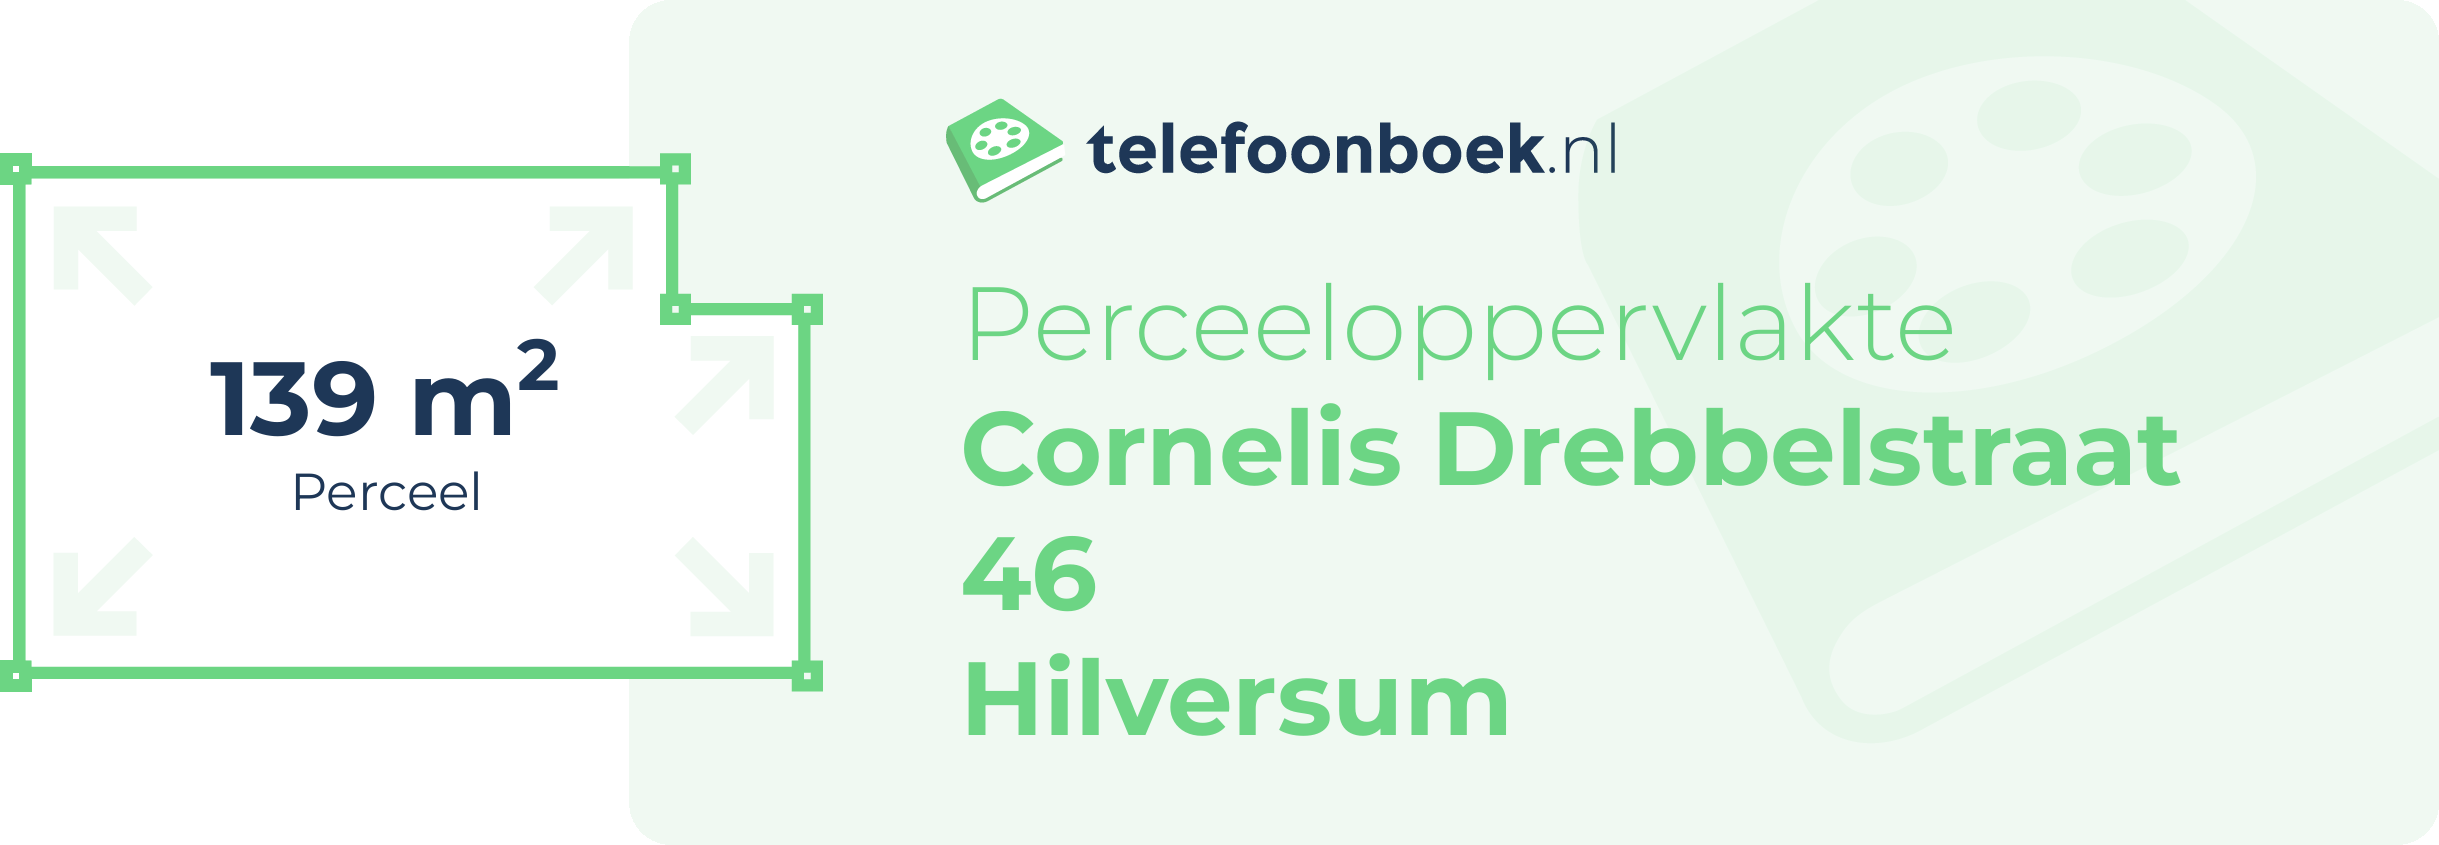 Perceeloppervlakte Cornelis Drebbelstraat 46 Hilversum